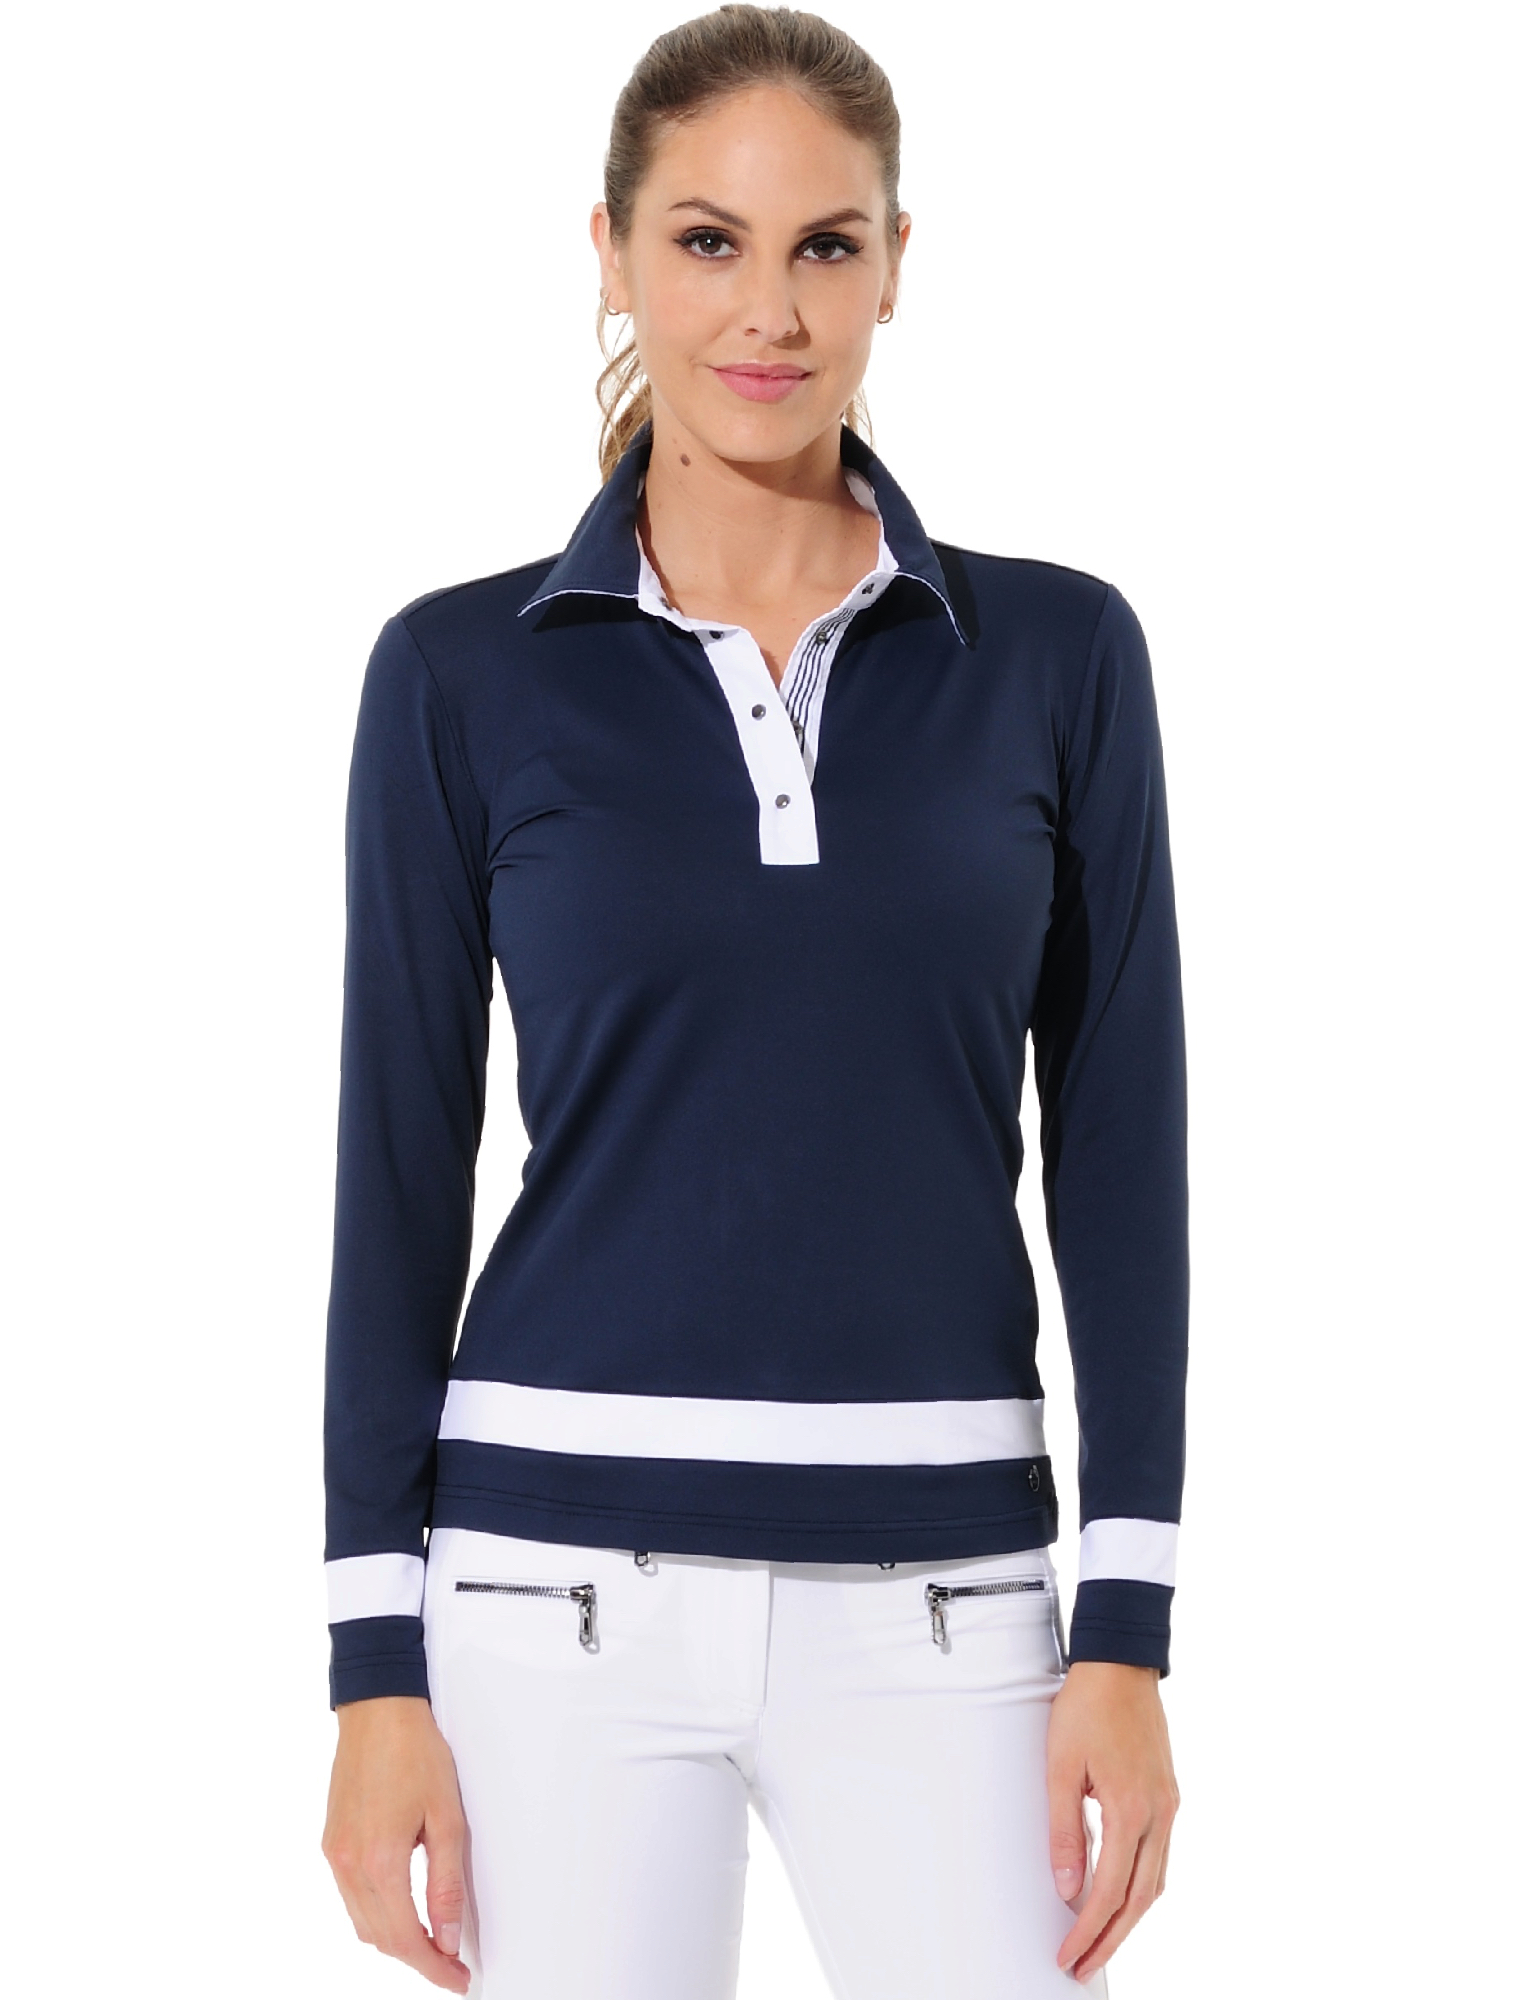 Jersey Golf Poloshirt navy